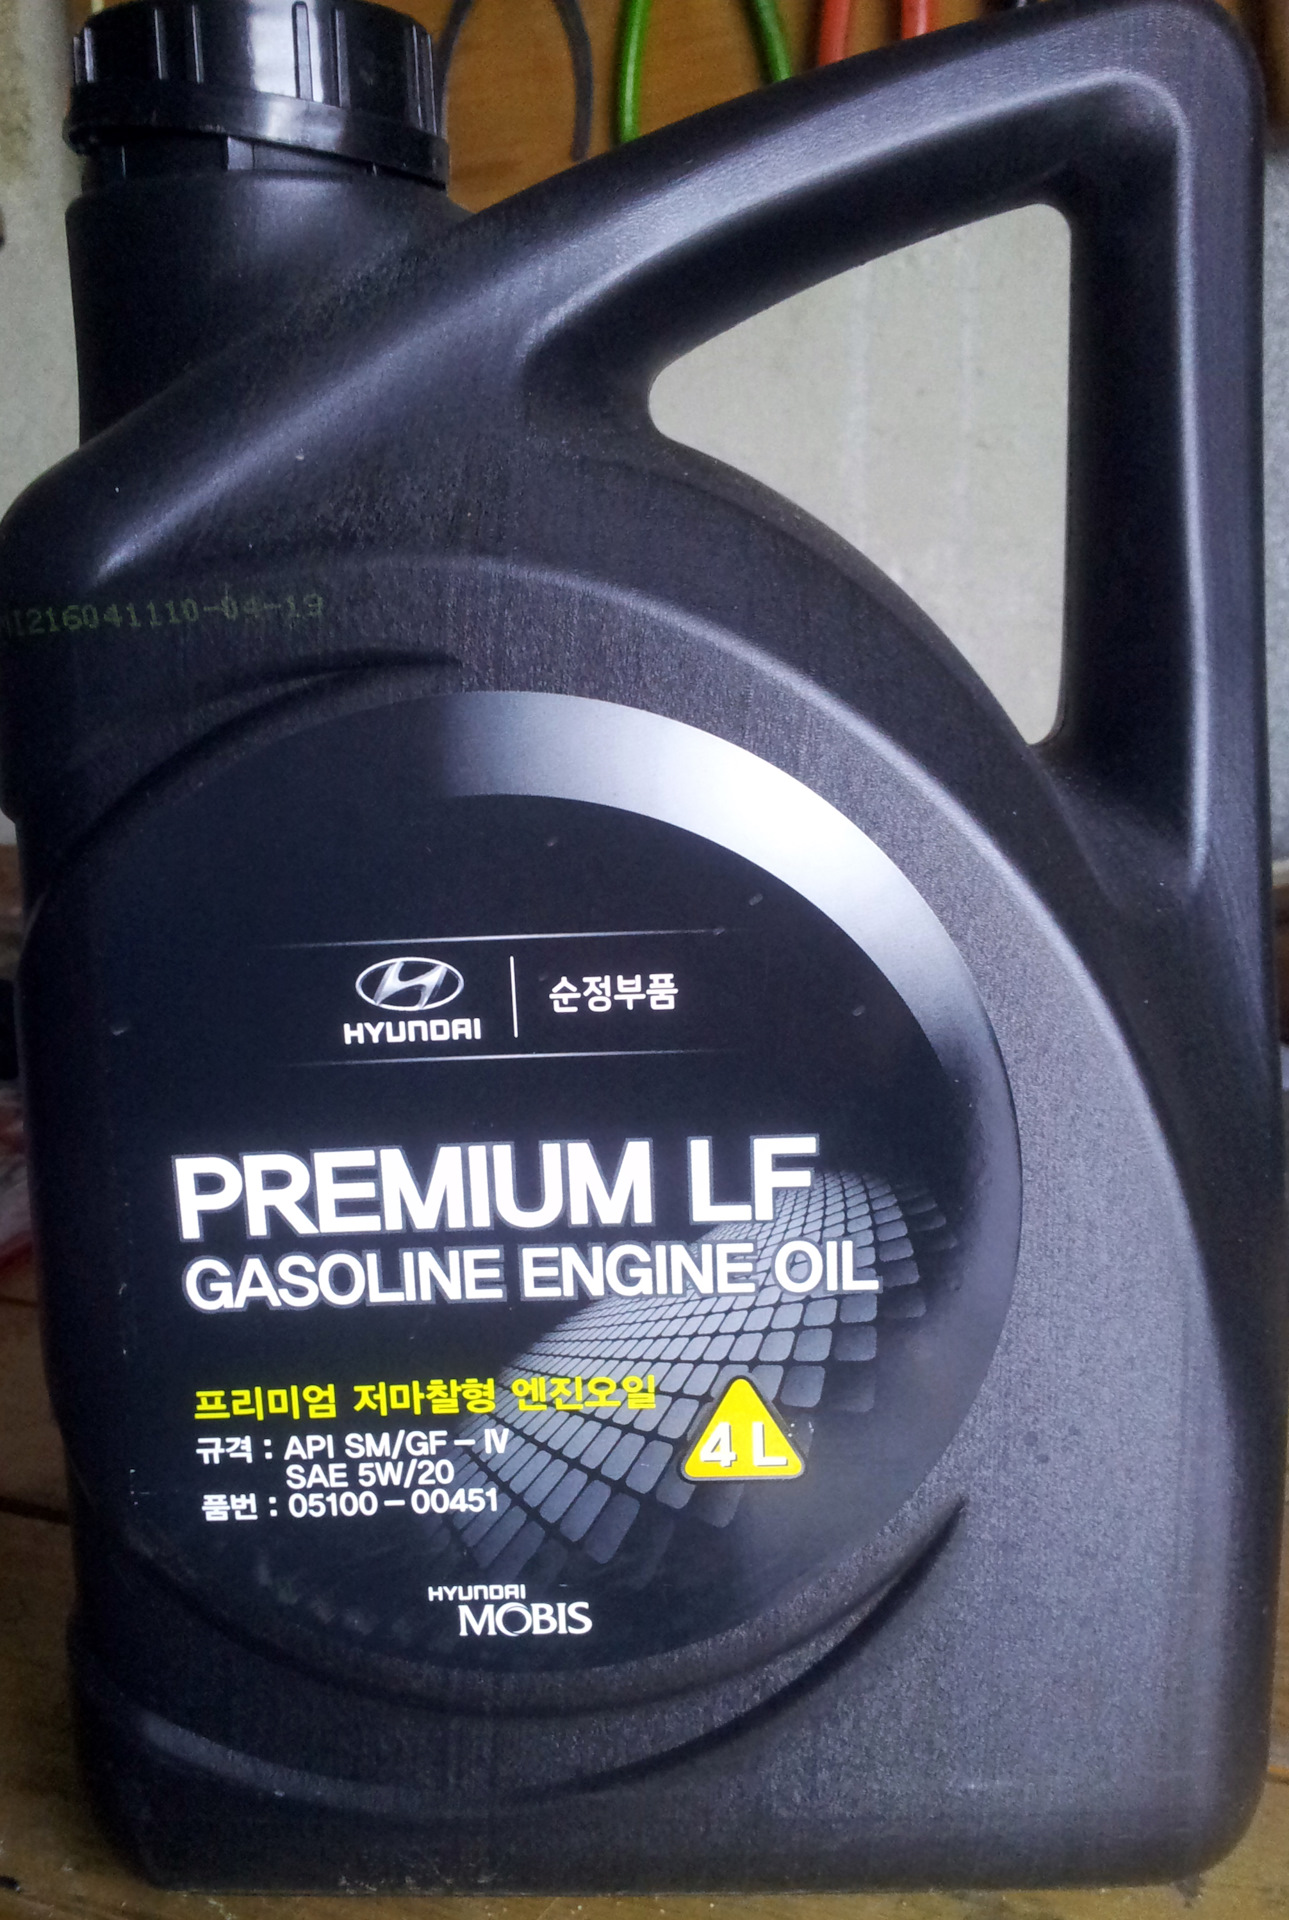 Hyundai premium lf gasoline 5w 20. Hyundai Premium LF gasoline SAE 5w-20. Hyundai Premium LF gasoline SAE. Hyundai Premium LF gasoline 5w-20 артикул. Моторное масло Premium LF gasoline 5w-20 упаковка.